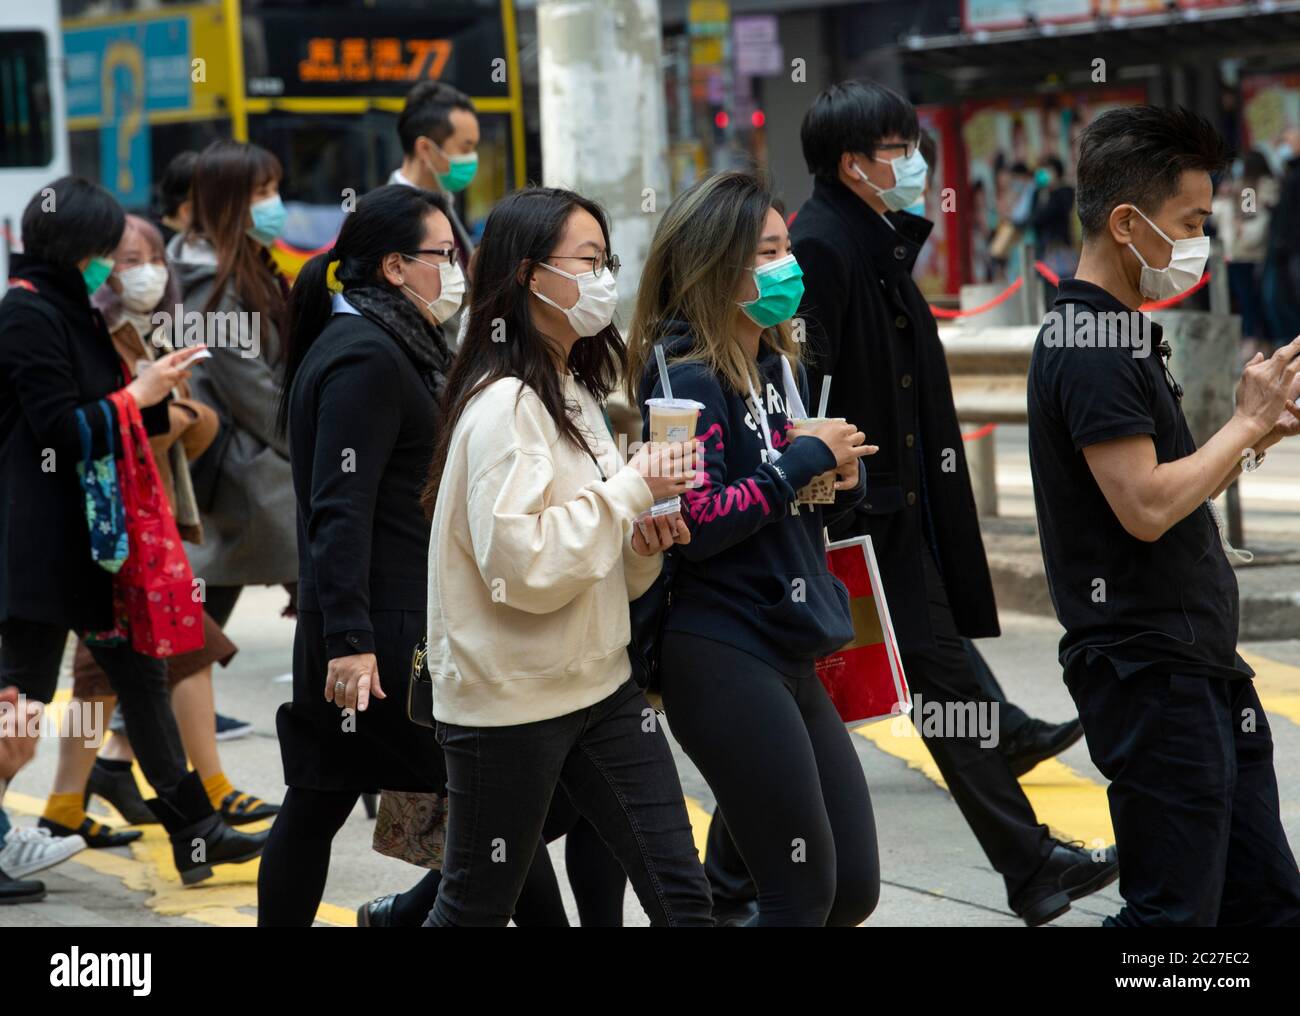 HONG KONG, HONG KONG SAR, CHINE : 29 JANVIER 2020. La peur du nouveau coronavirus de 2019 ( Covid-19 ) de Wuhan en Chine est évidente dans les rues de Hong K Banque D'Images